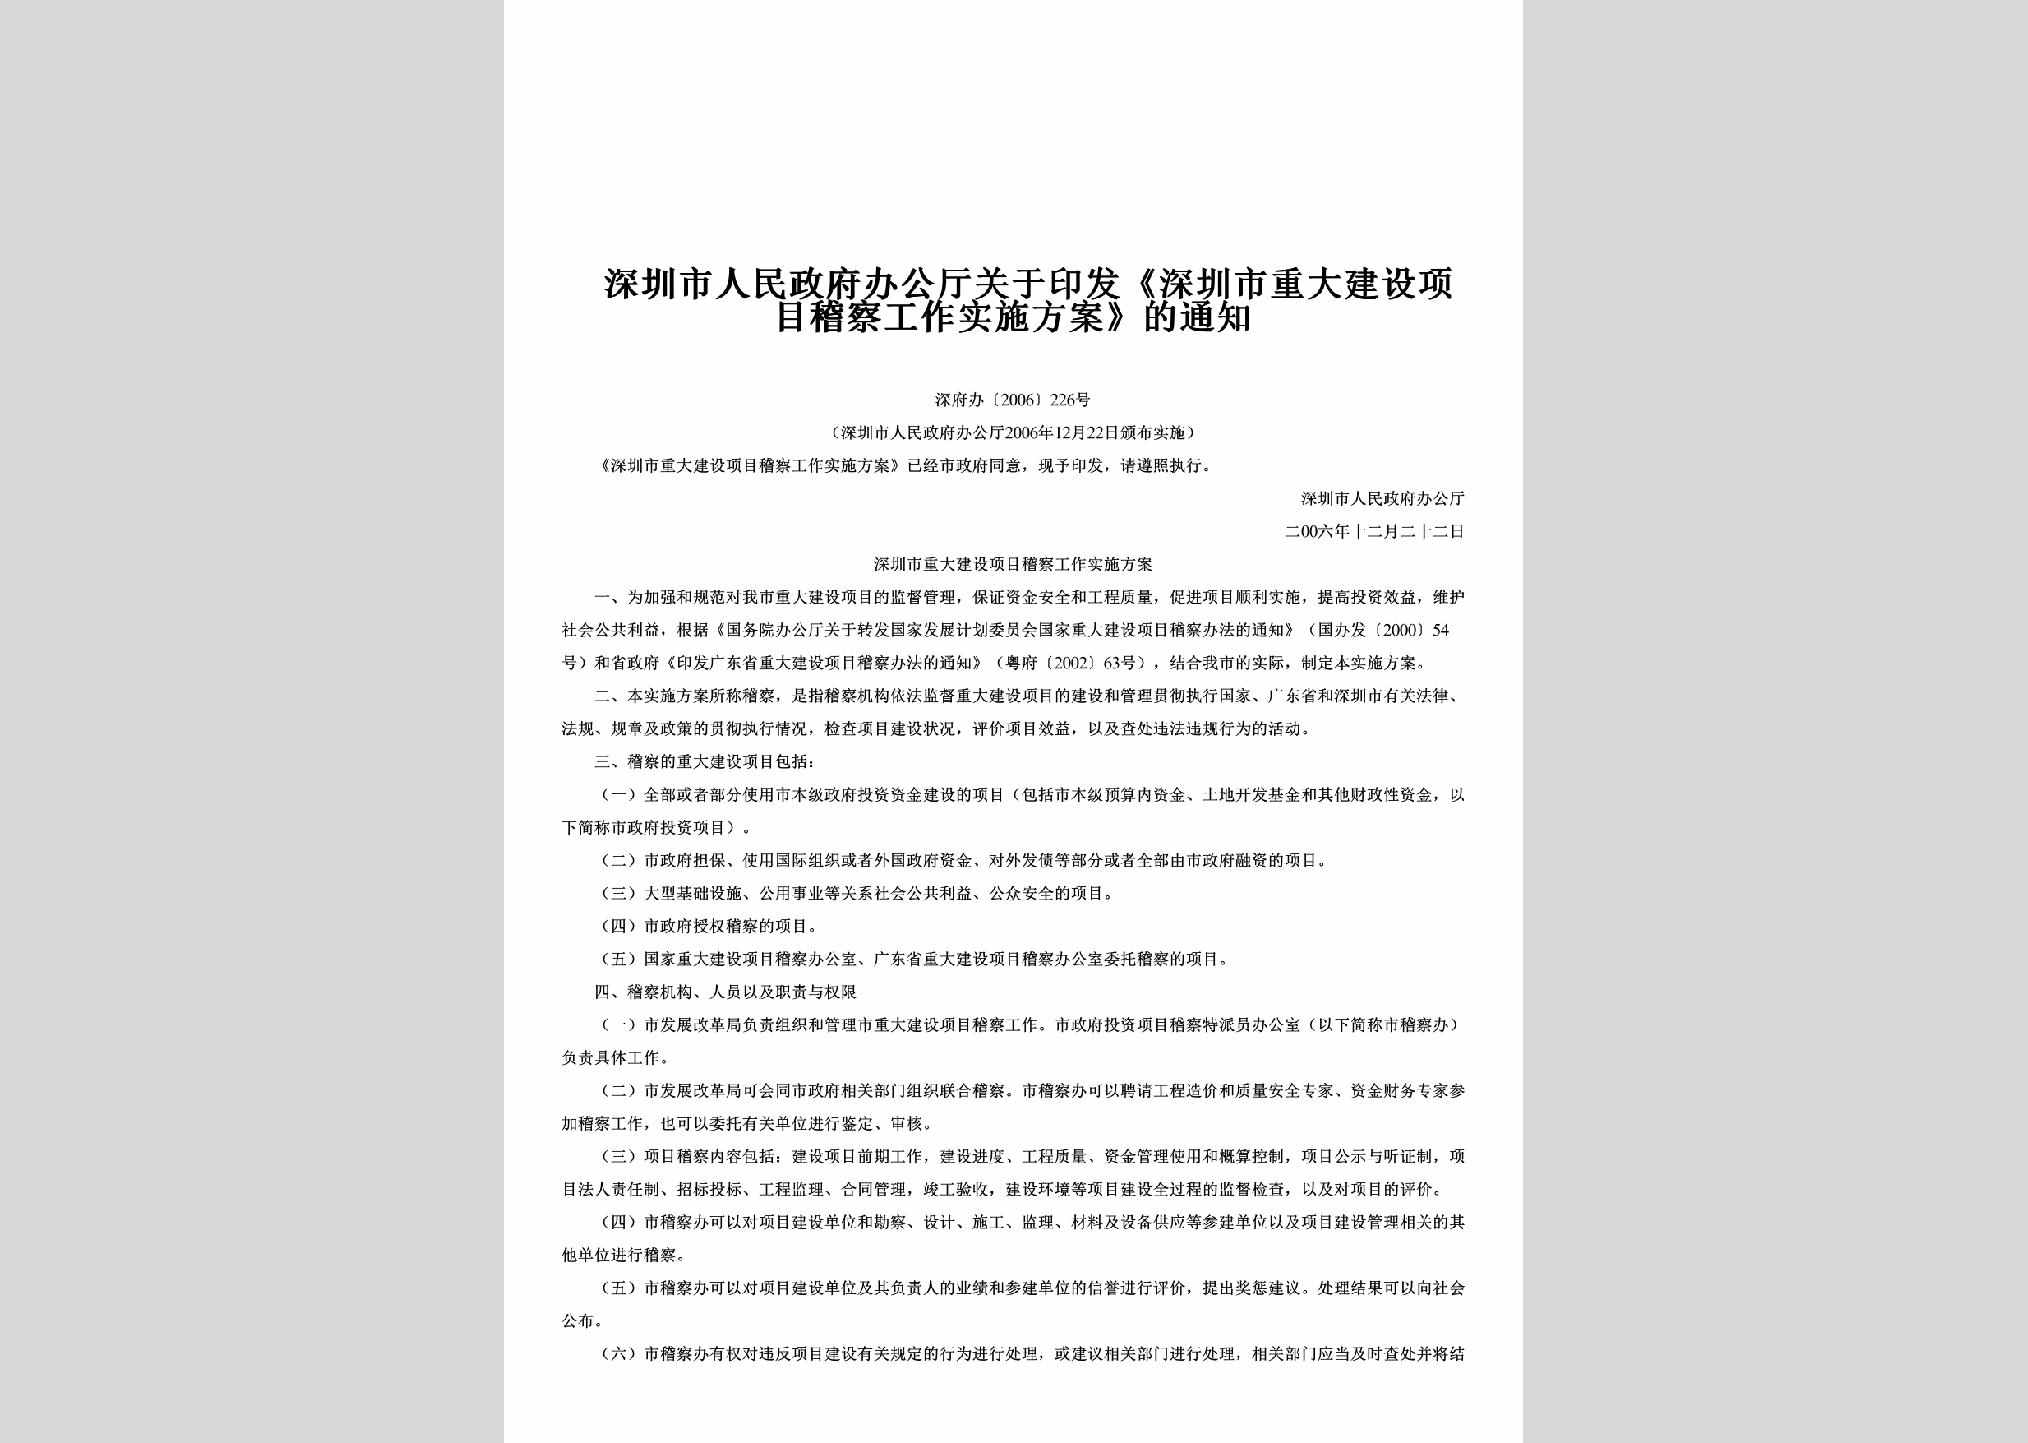 深府办[2006]226号：关于印发《深圳市重大建设项目稽察工作实施方案》的通知